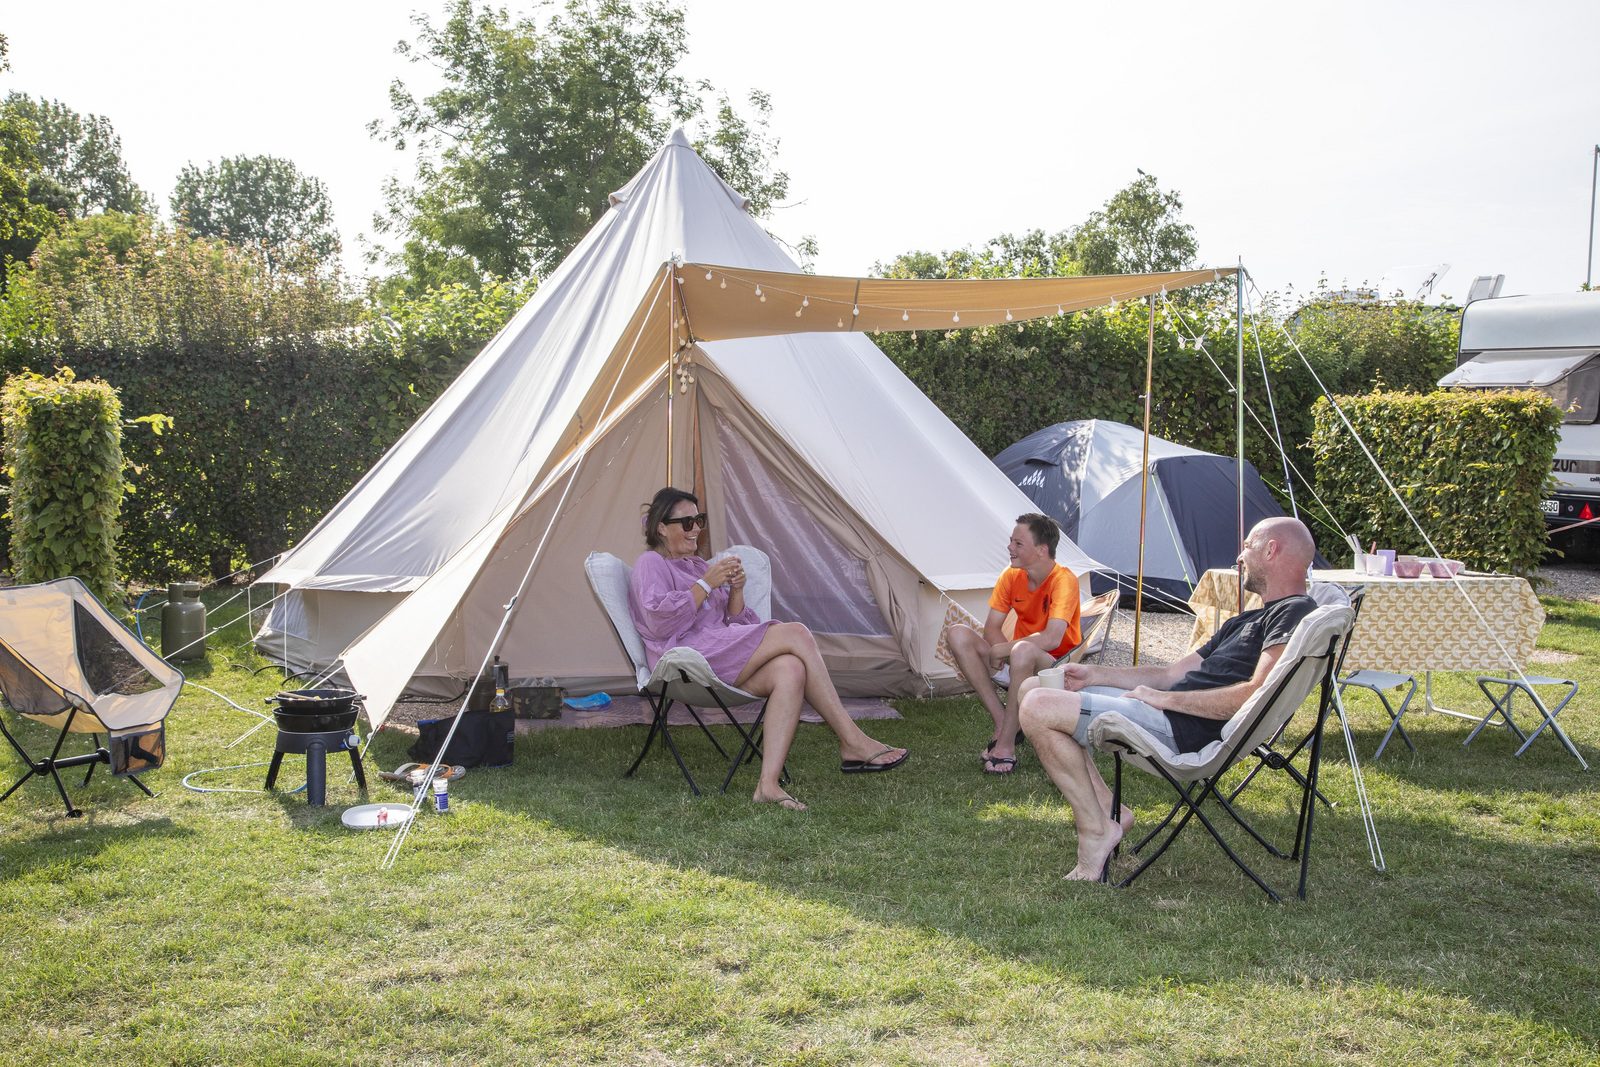  Campingmöglichkeiten entdecken